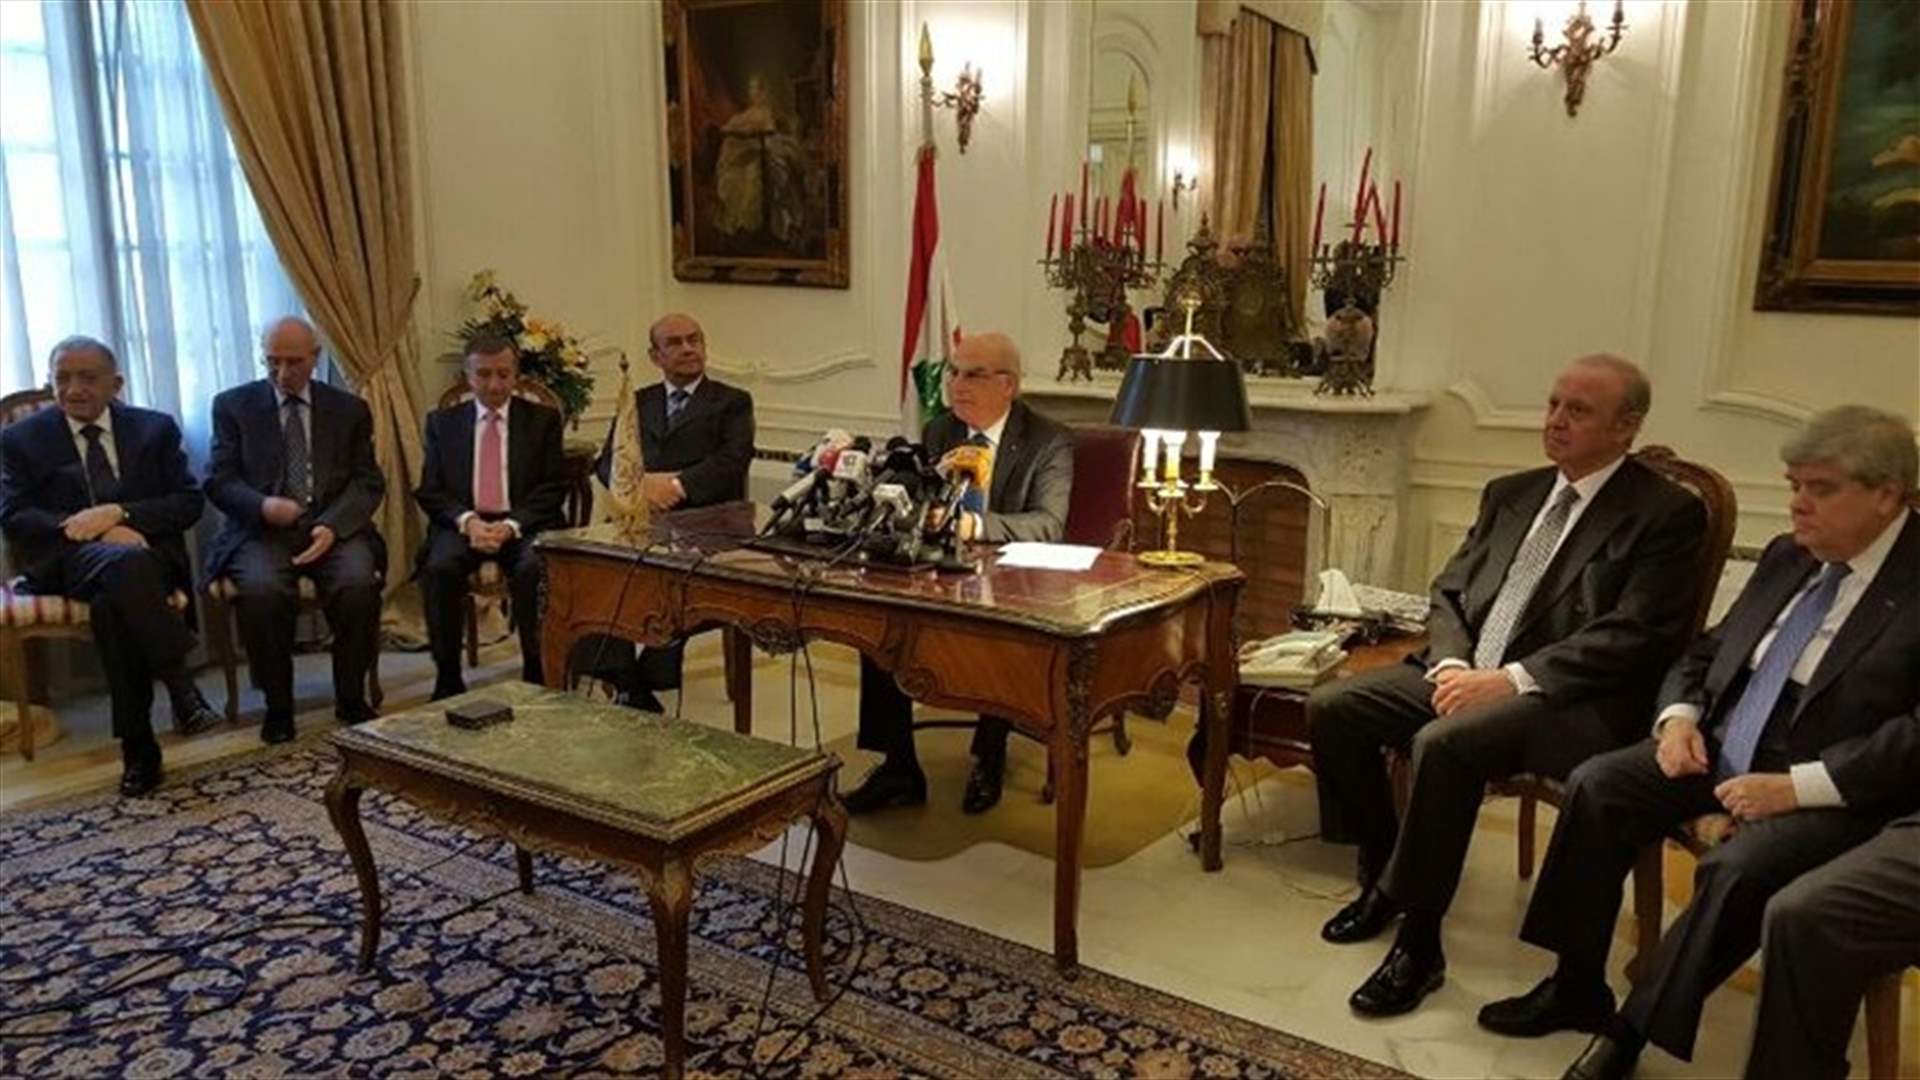 عصام سليمان أعلن مشروع توسيع صلاحيات المجلس الدستوري